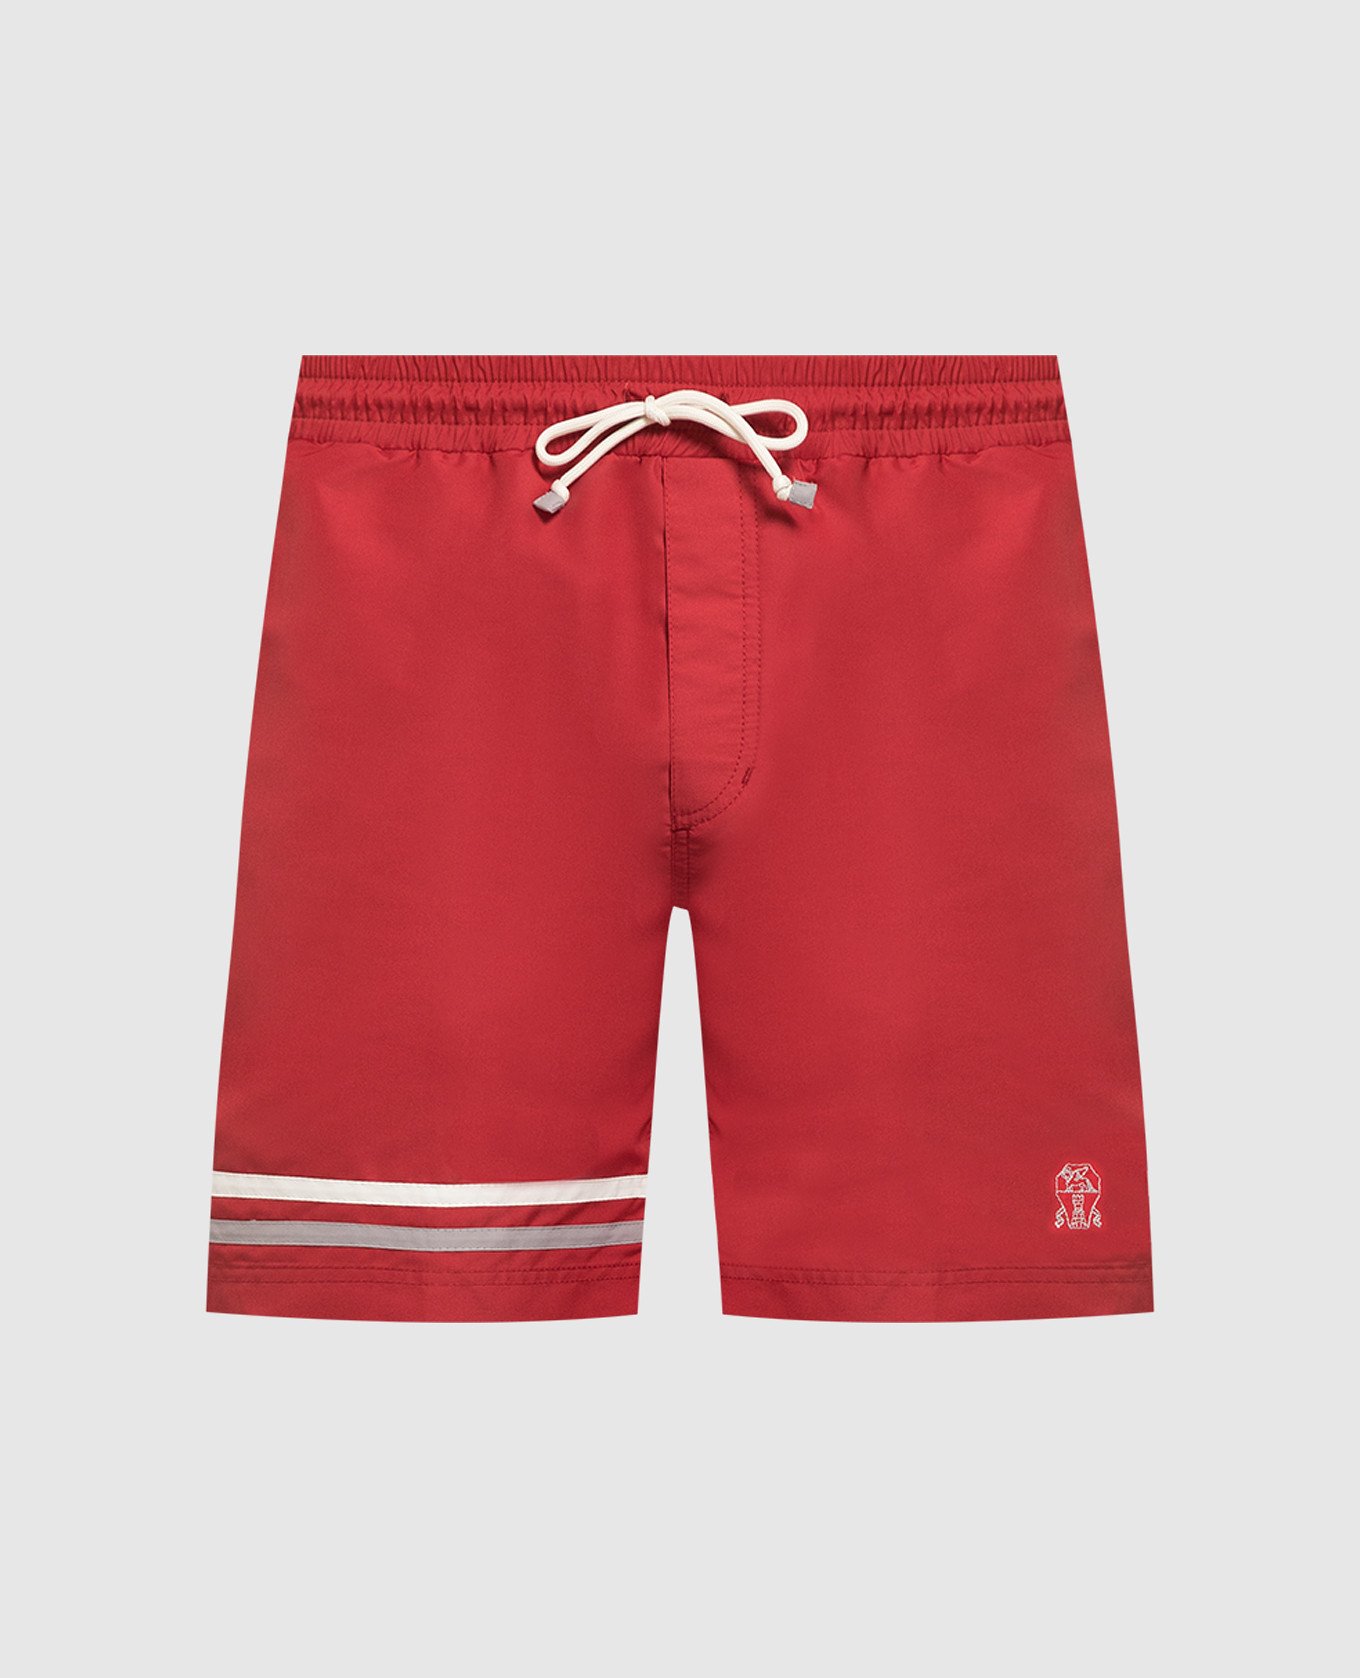 Красные шорты для плавания с вышивкой логотипа